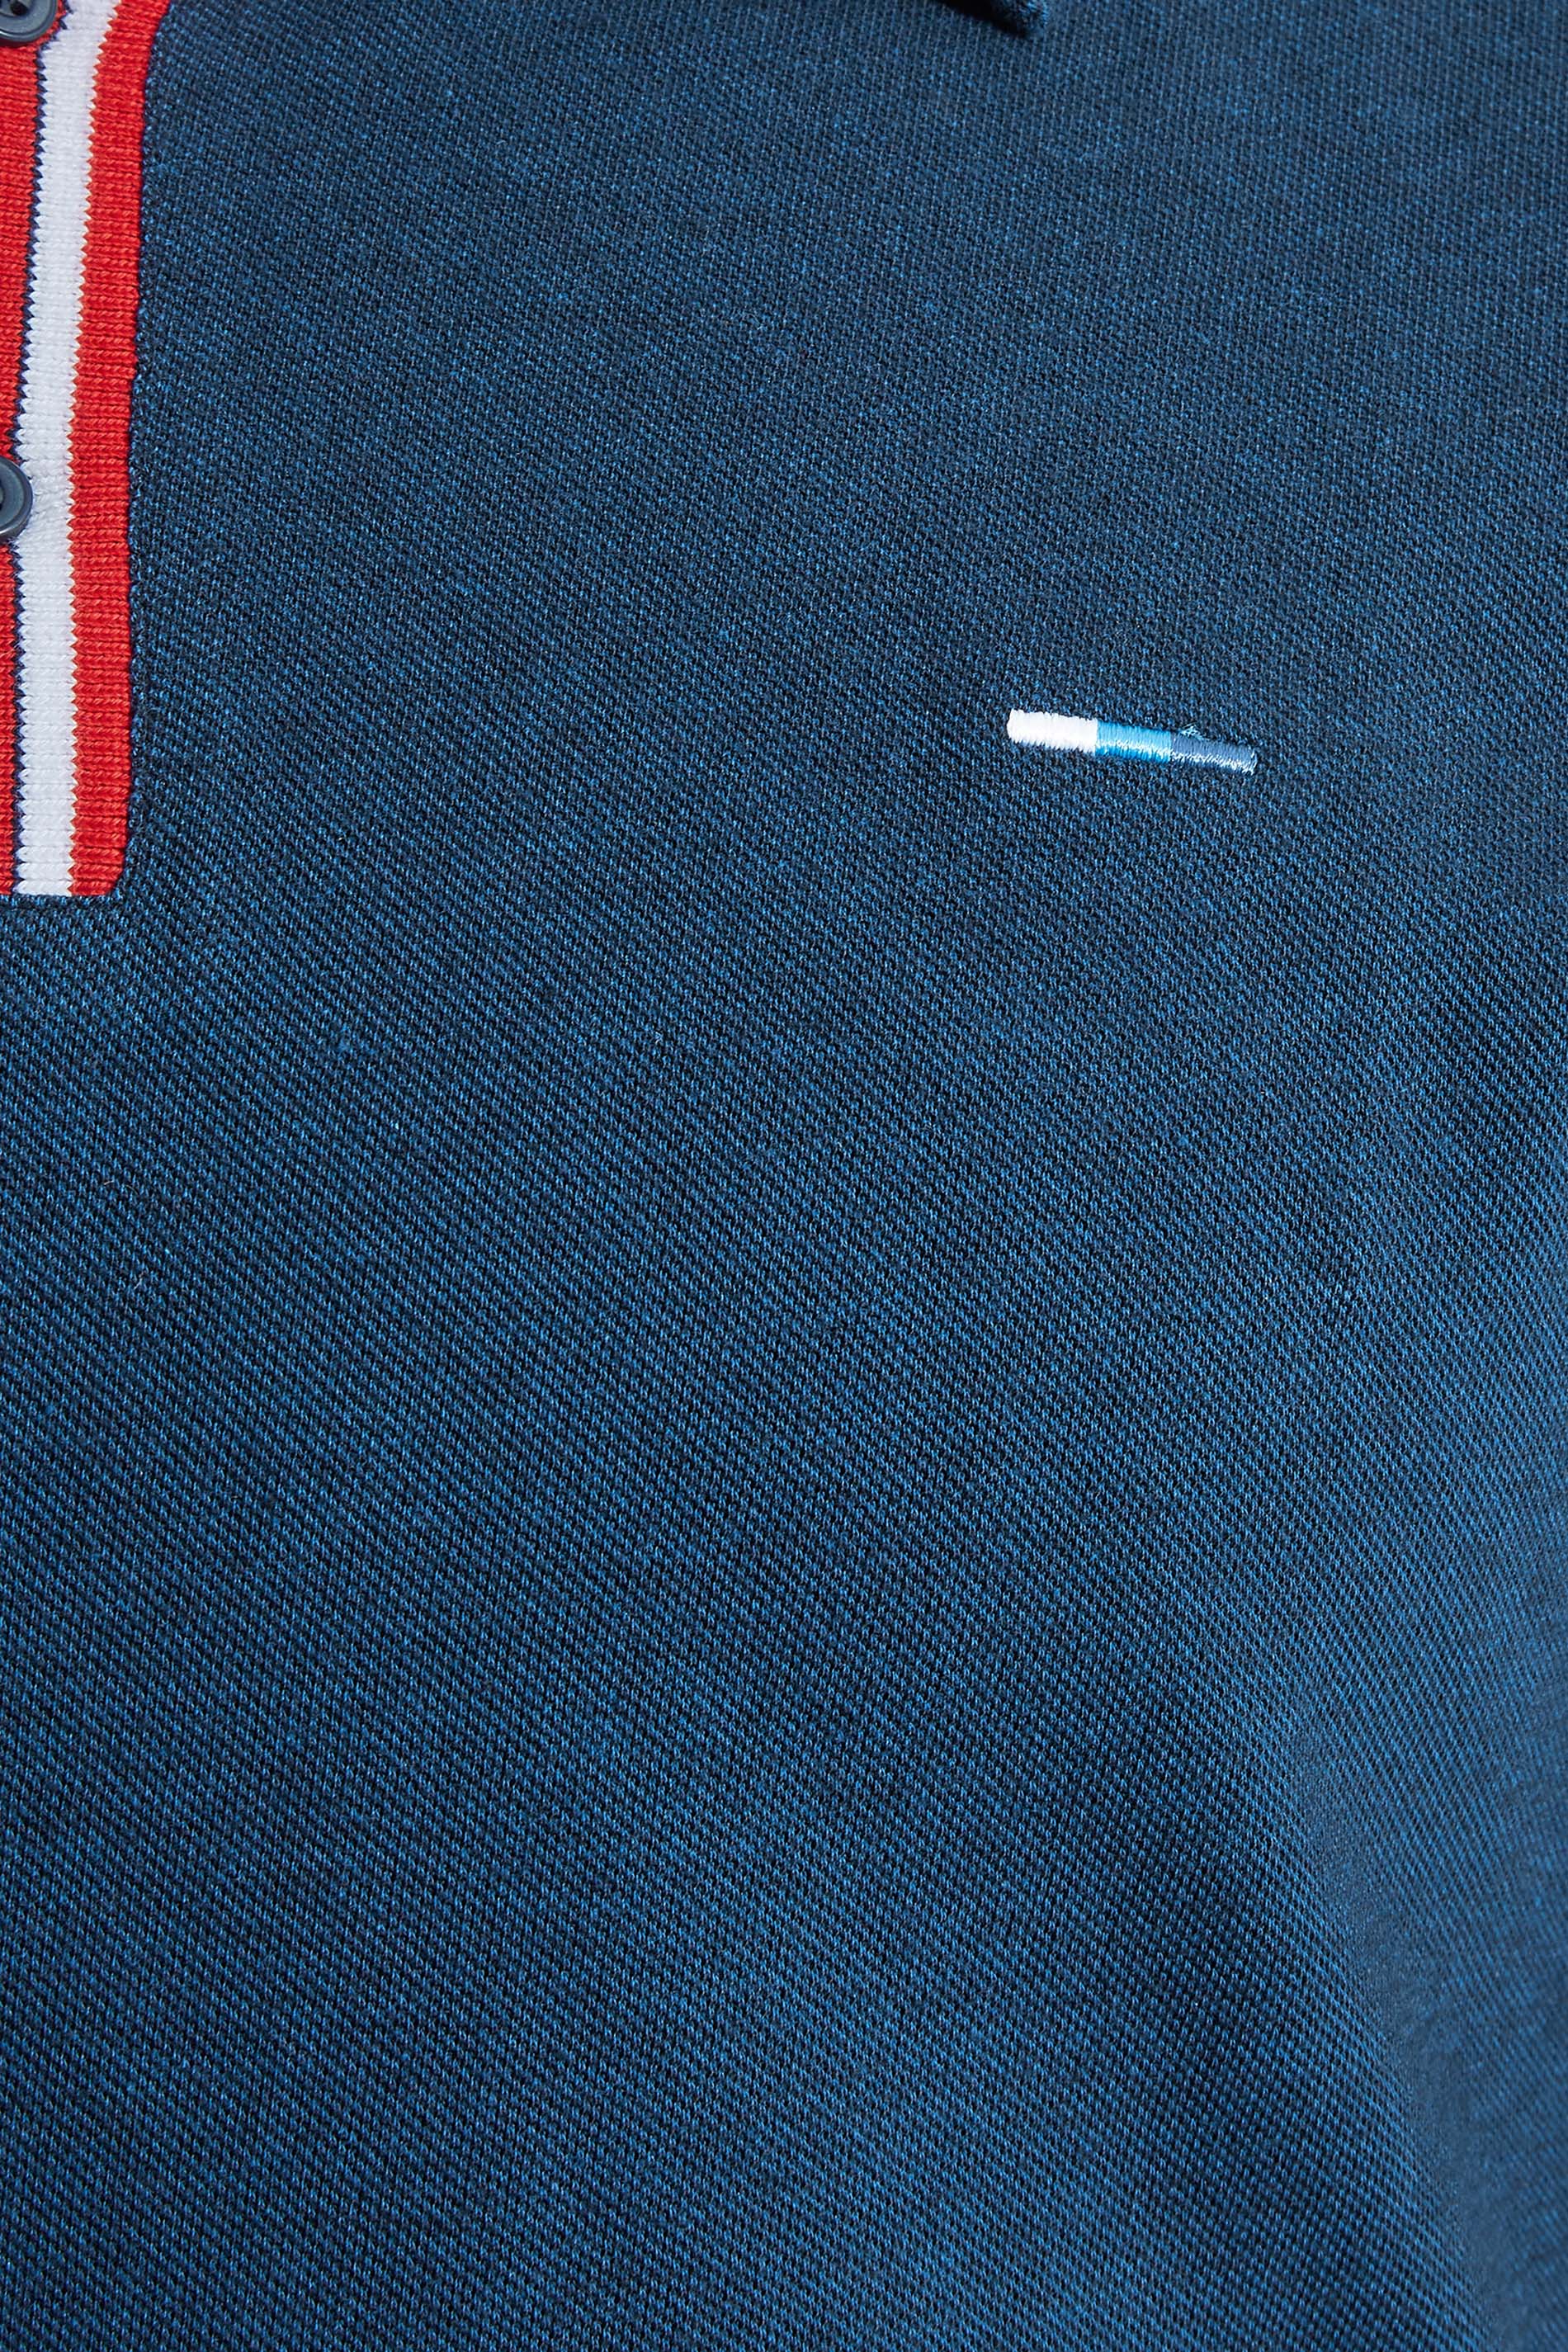 BadRhino Big & Tall Navy Blue Contrast Stripe Placket Polo Shirt | BadRhino 2